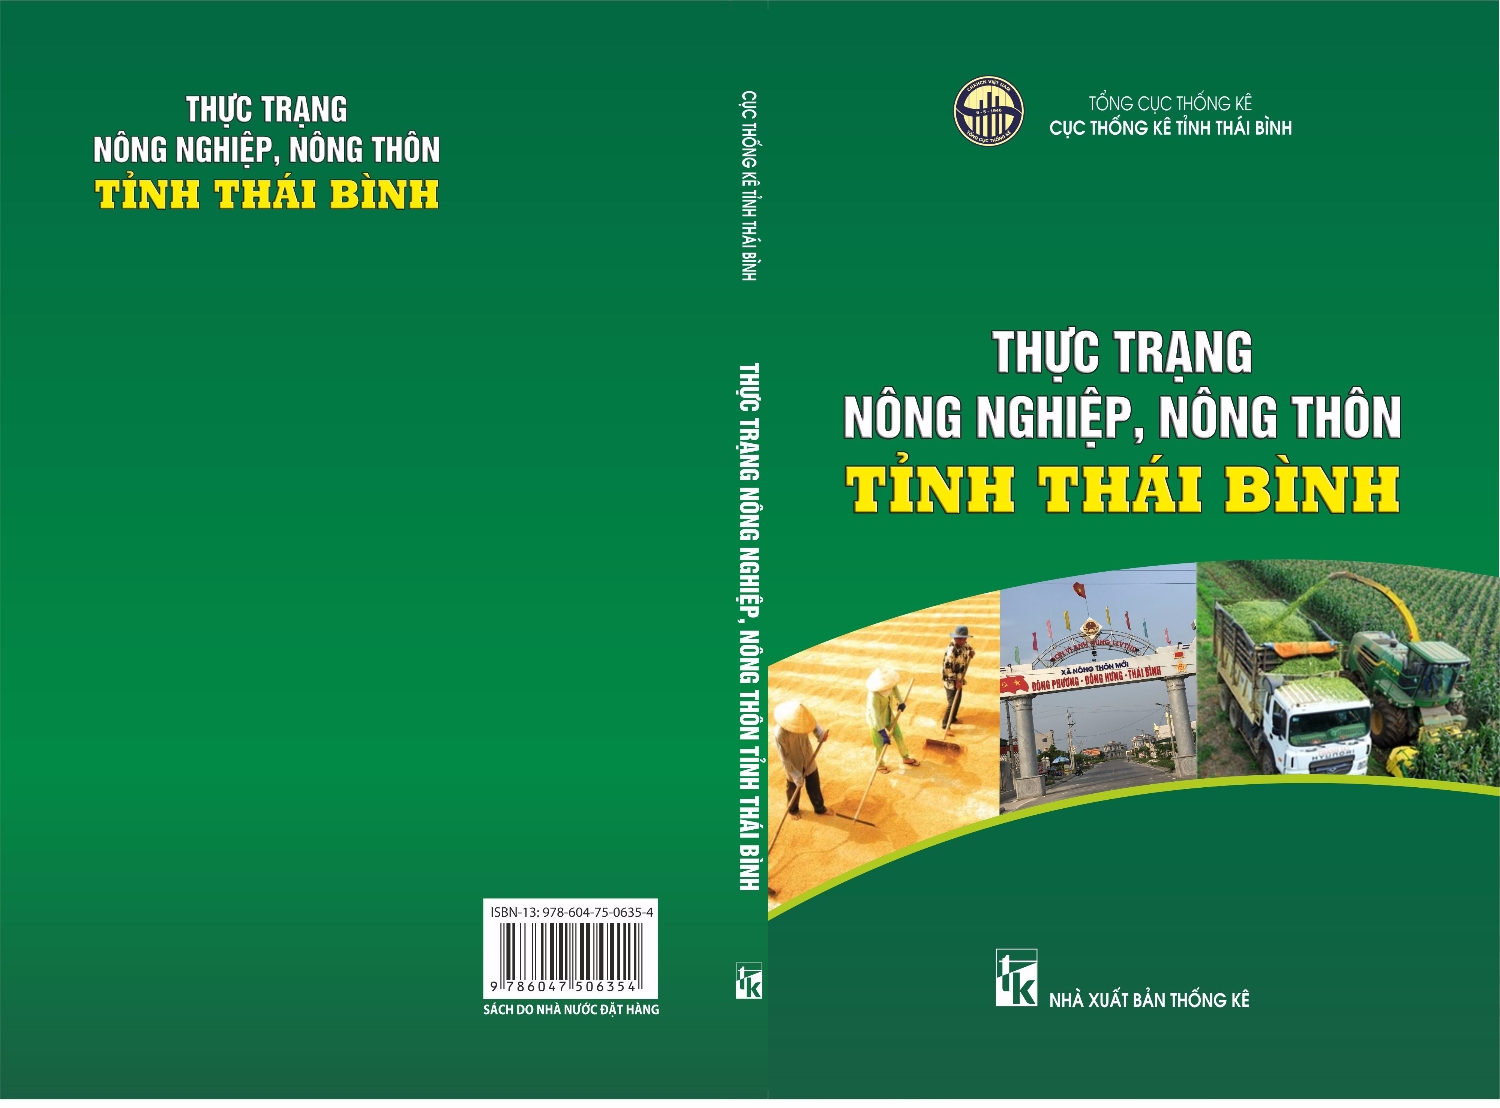 Thực trạng Nông nghiệp nông thôn tỉnh Thái Bình giai đoạn 2011 - 2016